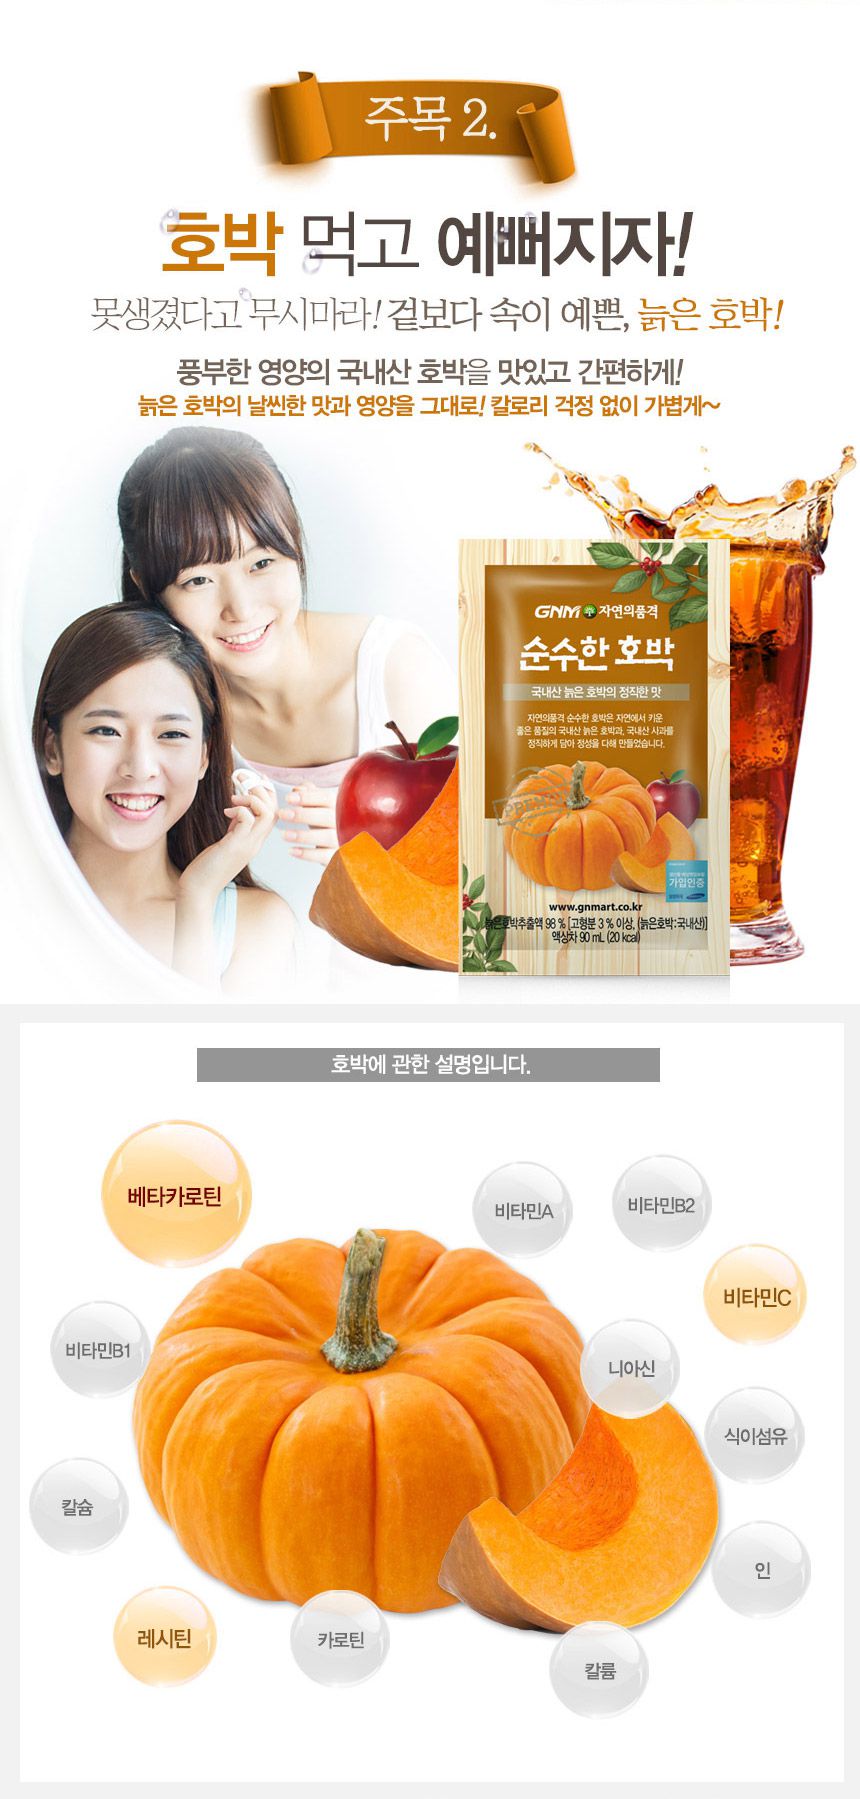 韓國食品-[GNM] 품격있는 호박즙 90ml